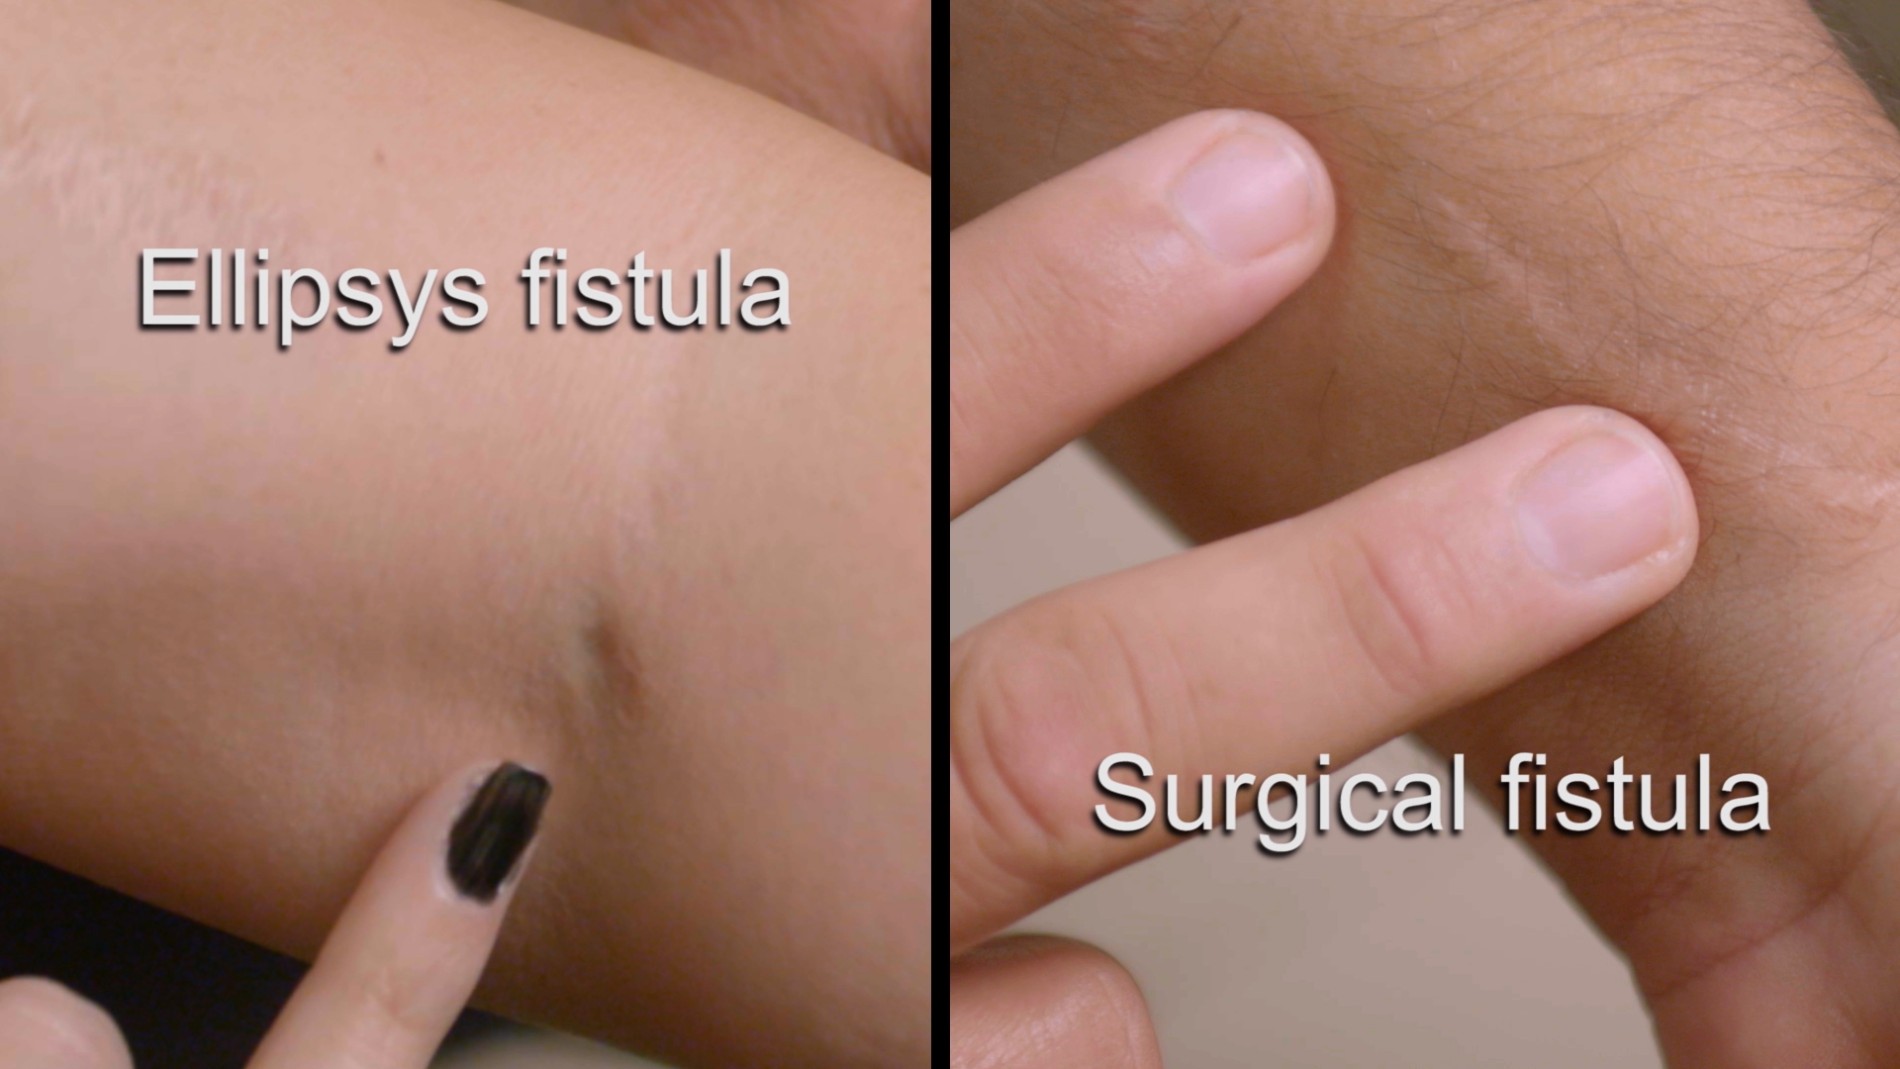 Ellipsys Fistula and Surgical Fistula